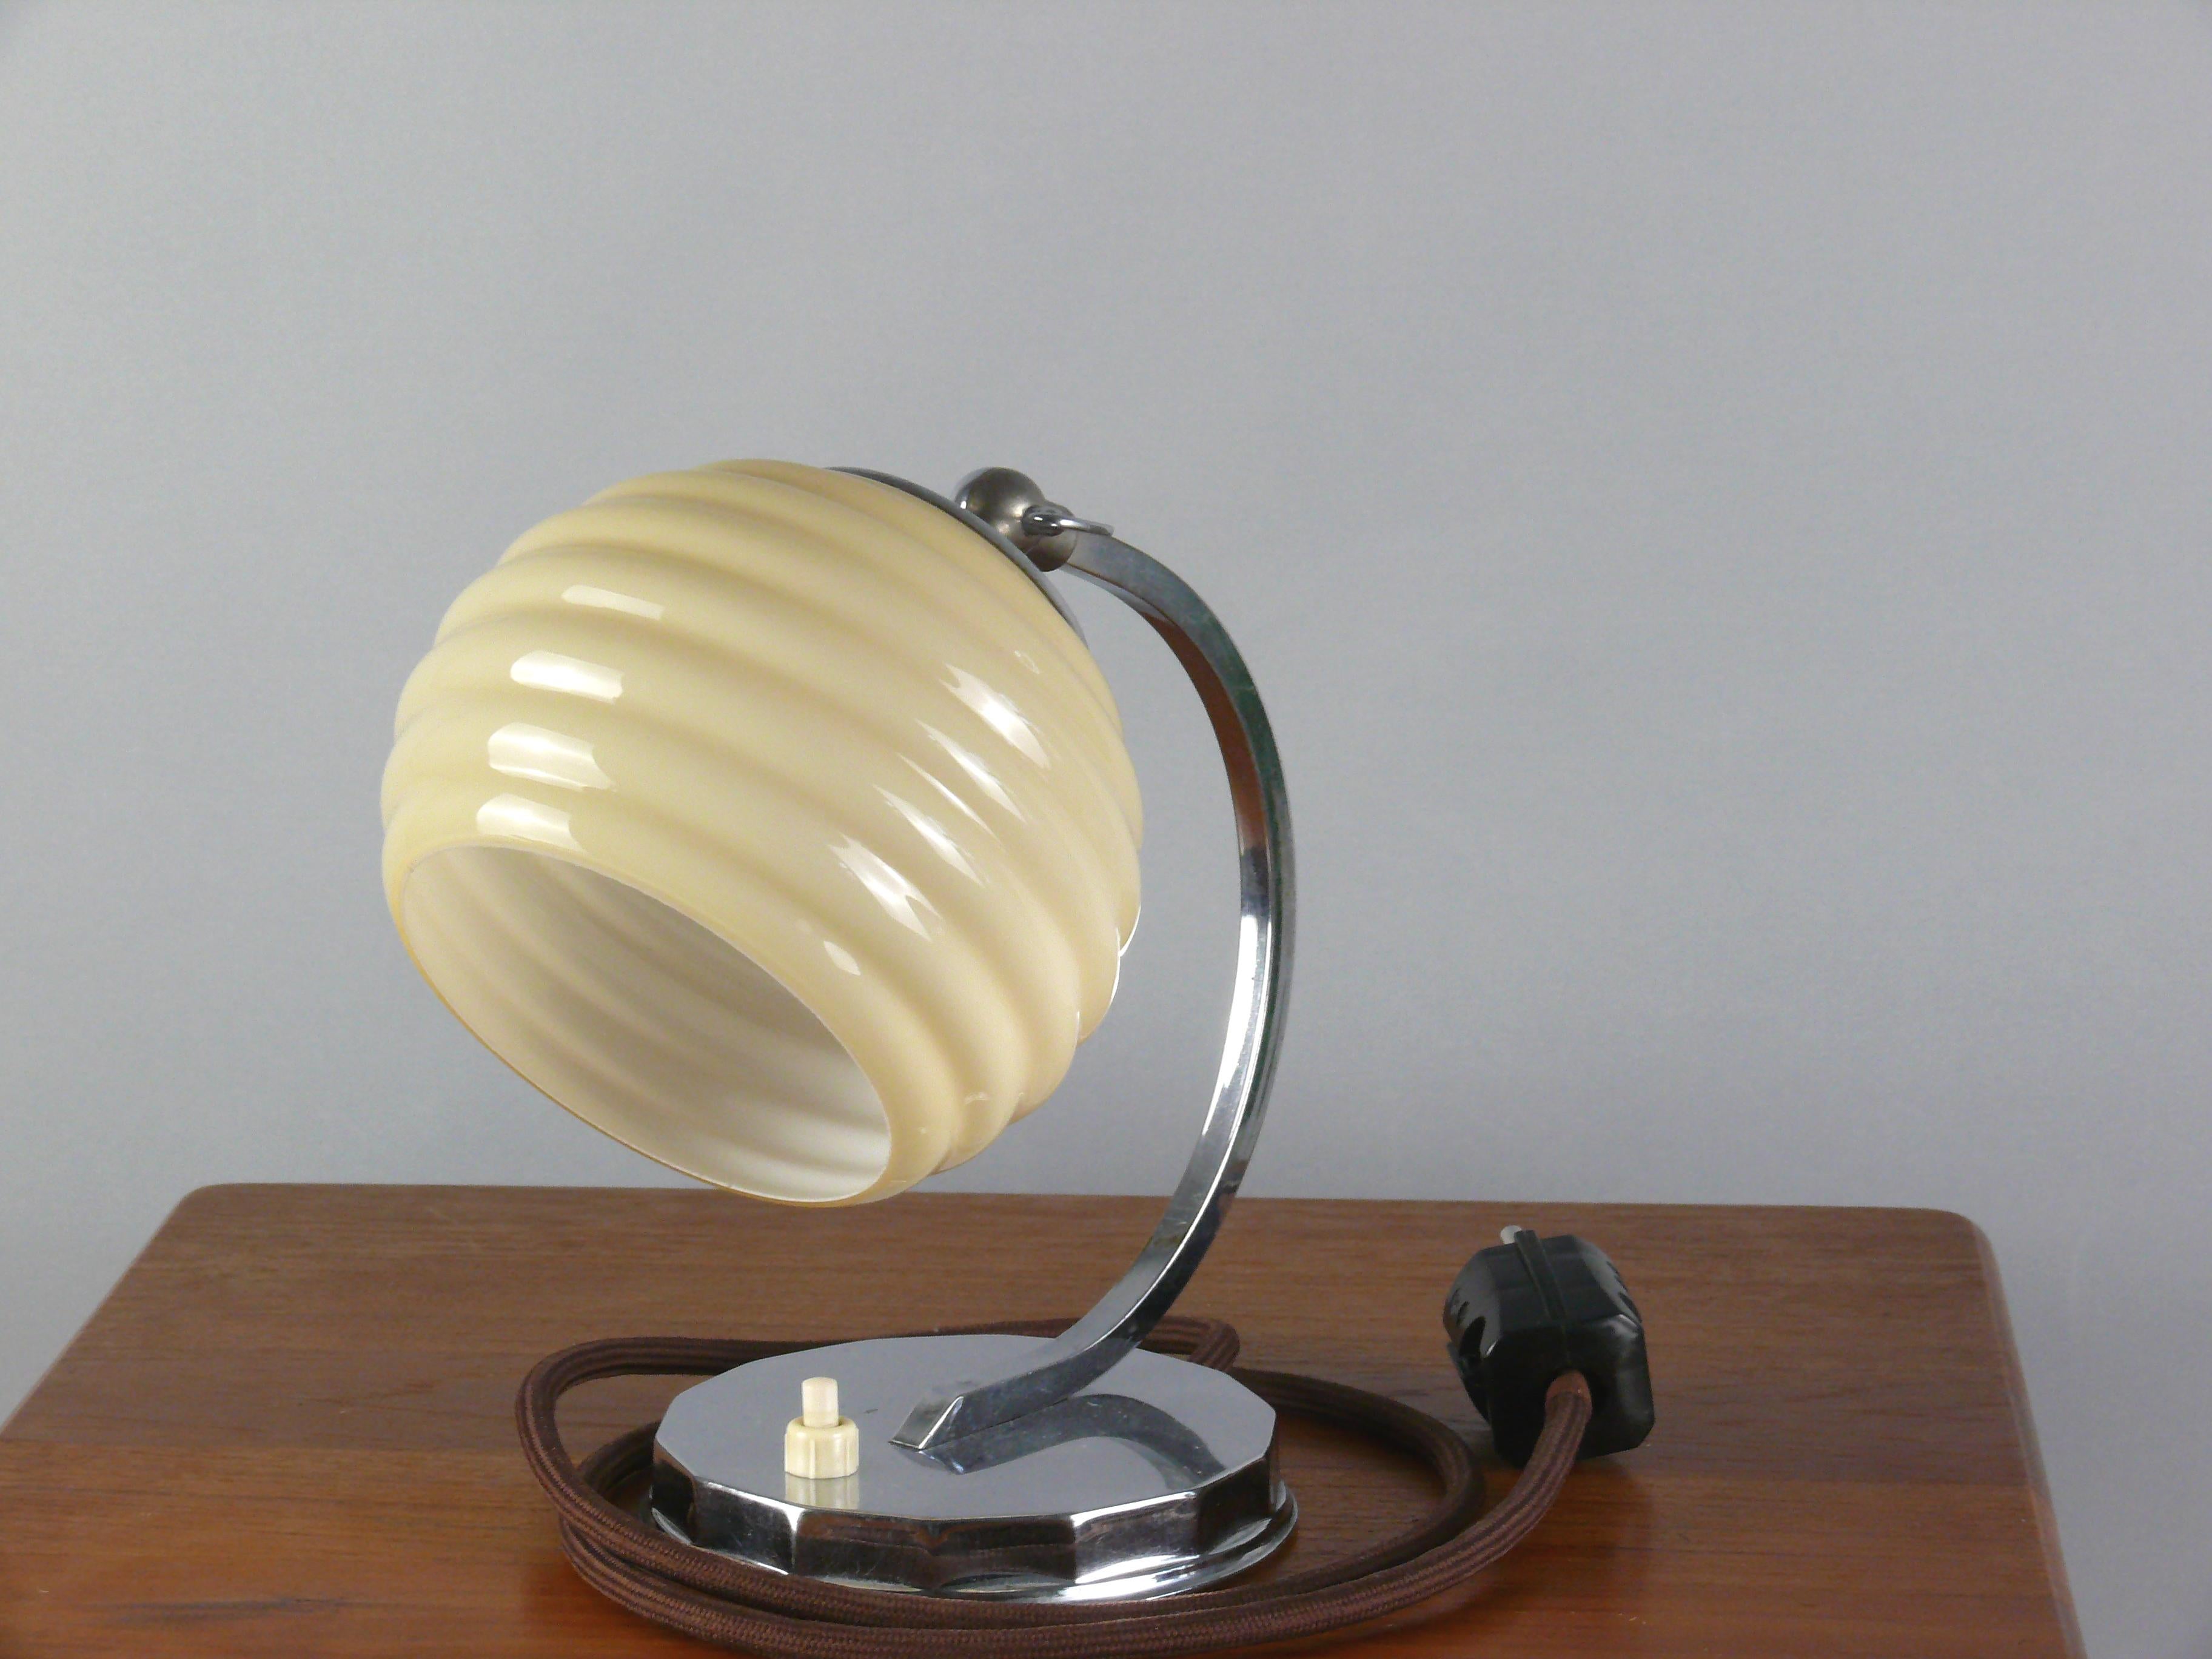 Art Deco Tischlampe, wahrscheinlich aus den 1930er Jahren in gutem Zustand. Die Leuchte besticht durch ihren glänzend verchromten Rundsockel und den dekorativen Schirm. Die Lampe ist mit einer Messingfassung E 27 ausgestattet und der Schirm kann mit